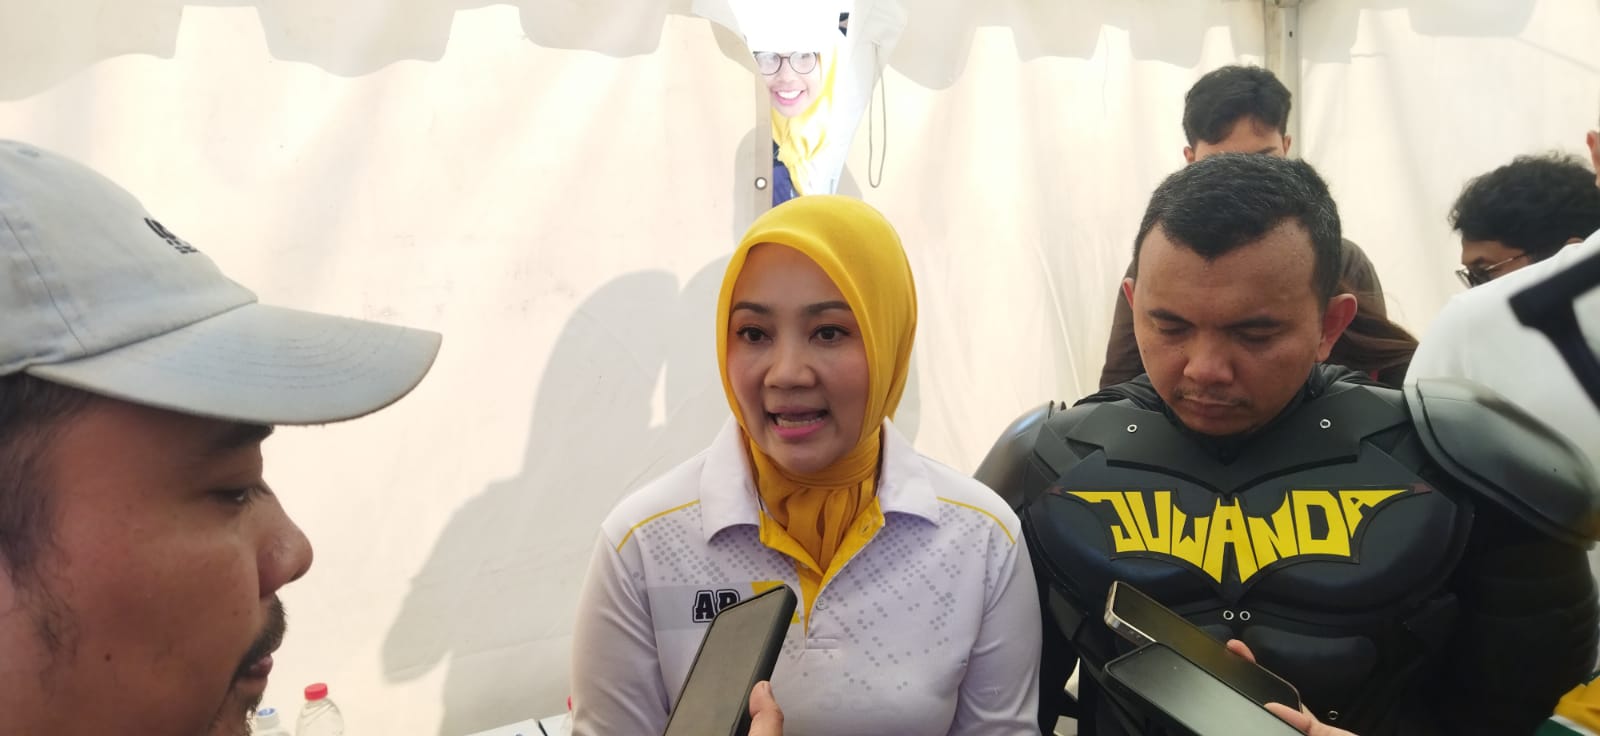  Juwanda Calon Wali Kota Bandung, Menampilkan Semangat Superhero dalam Senam Gembira di Tegallega